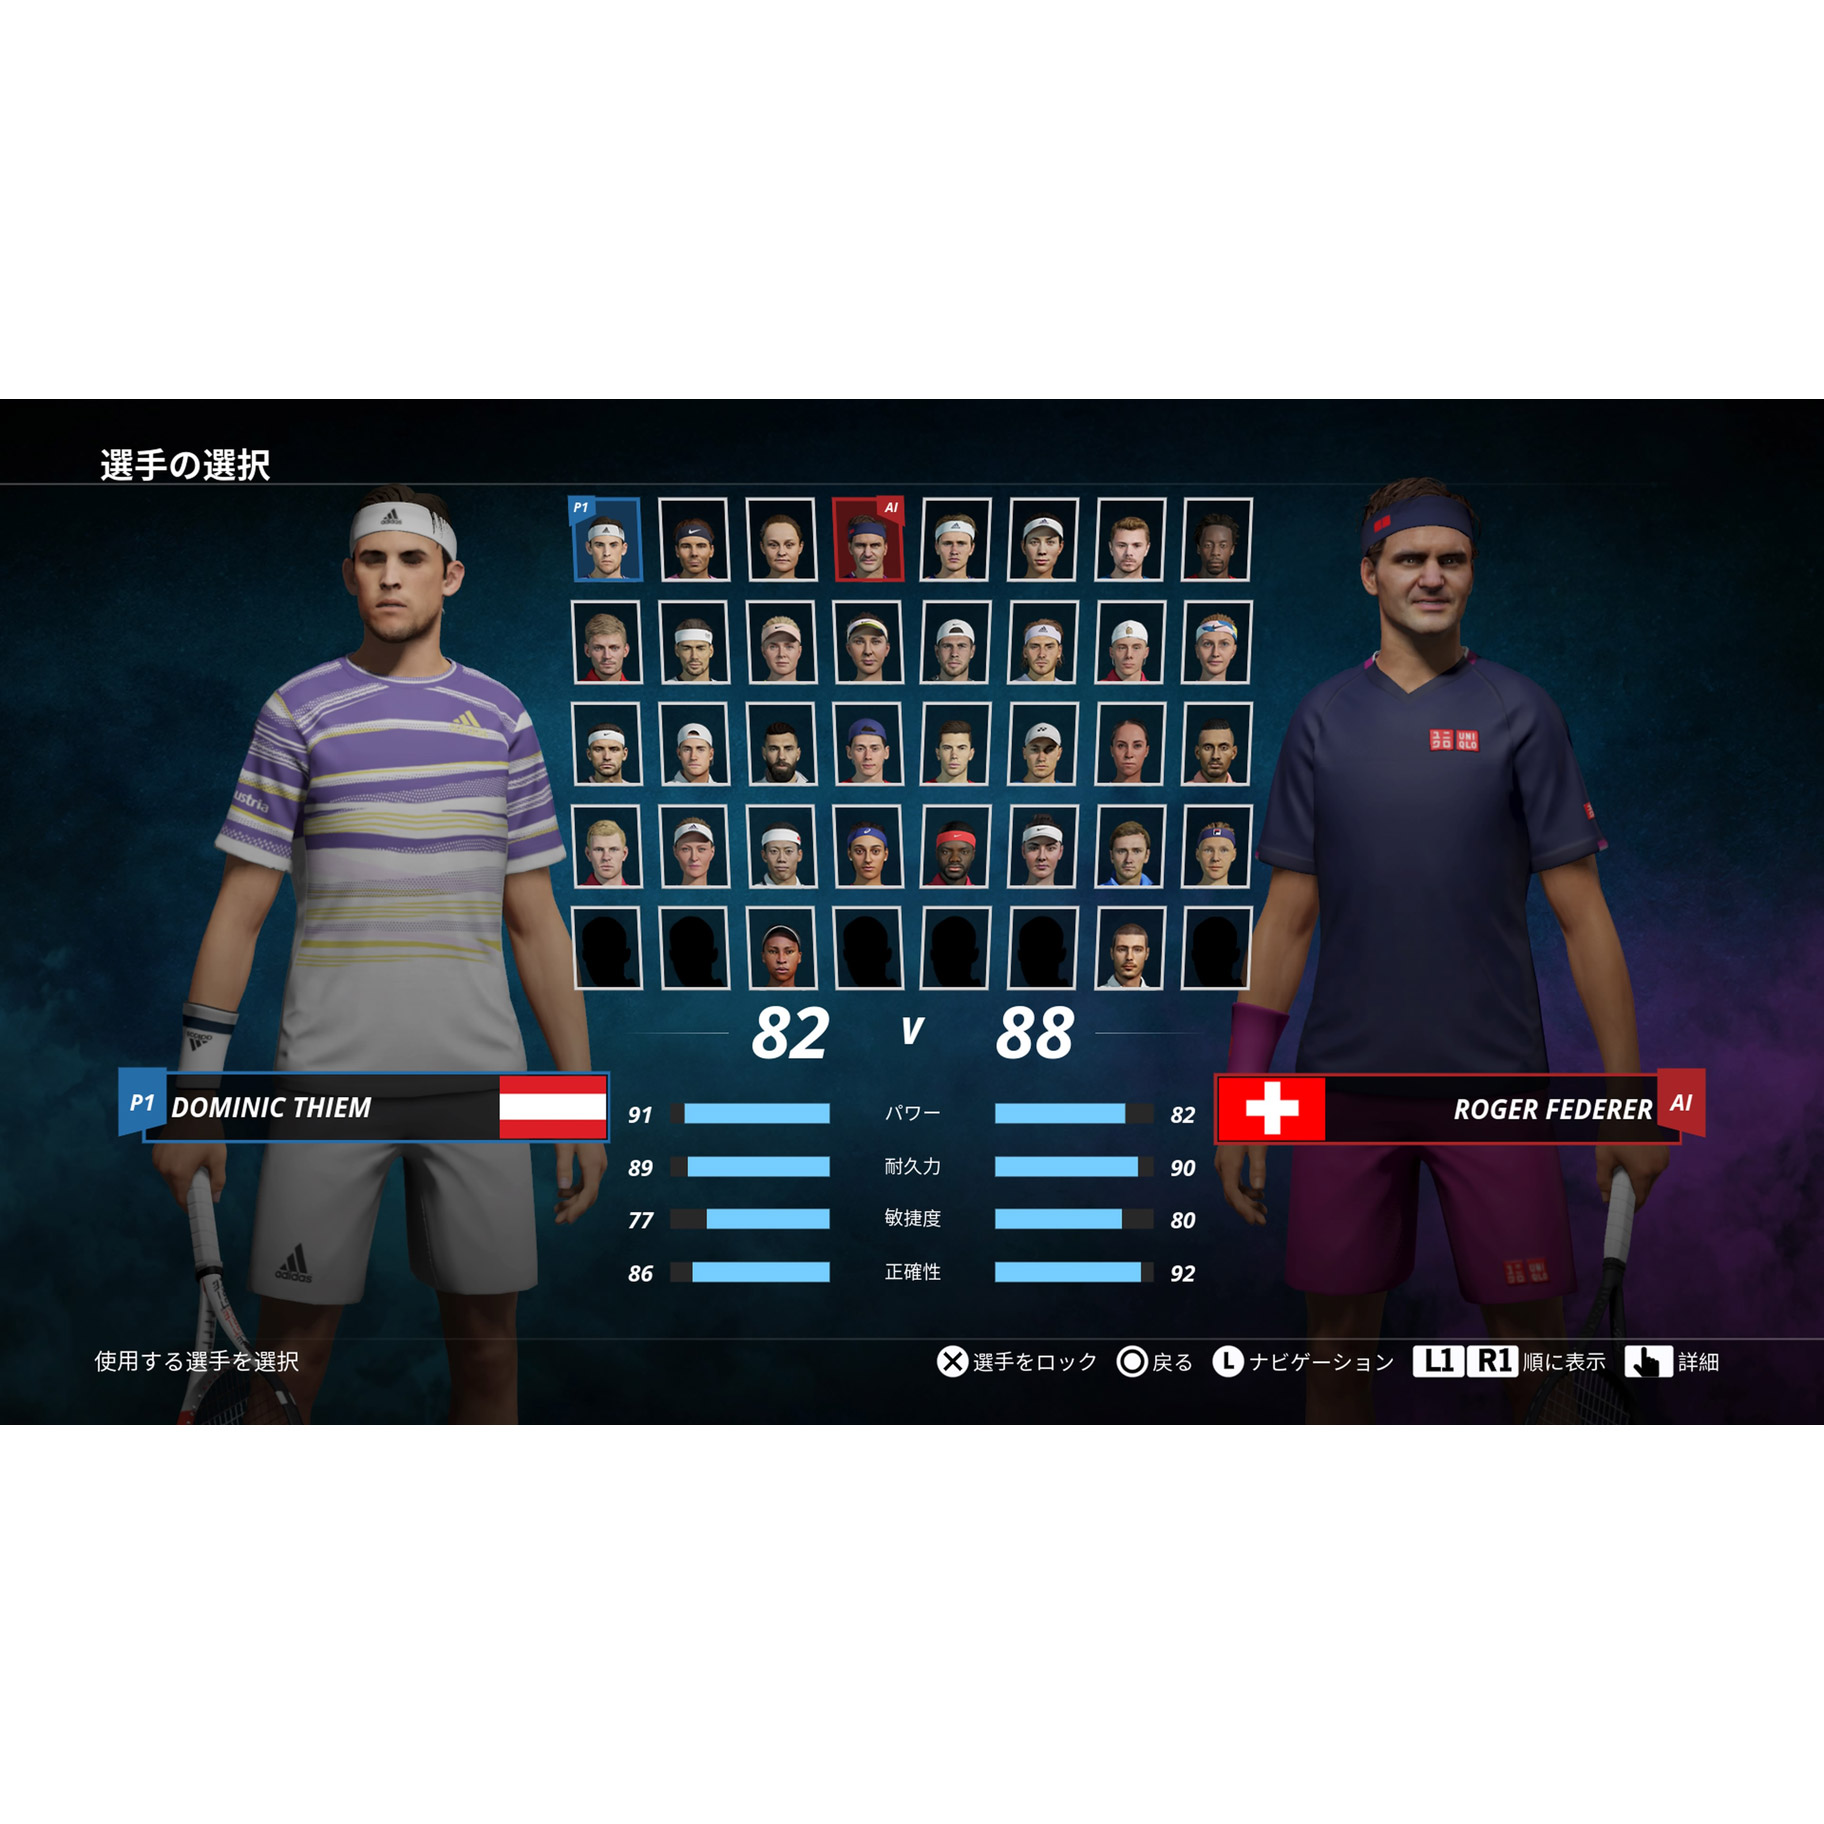 テニス ワールドツアー 2 -Switch